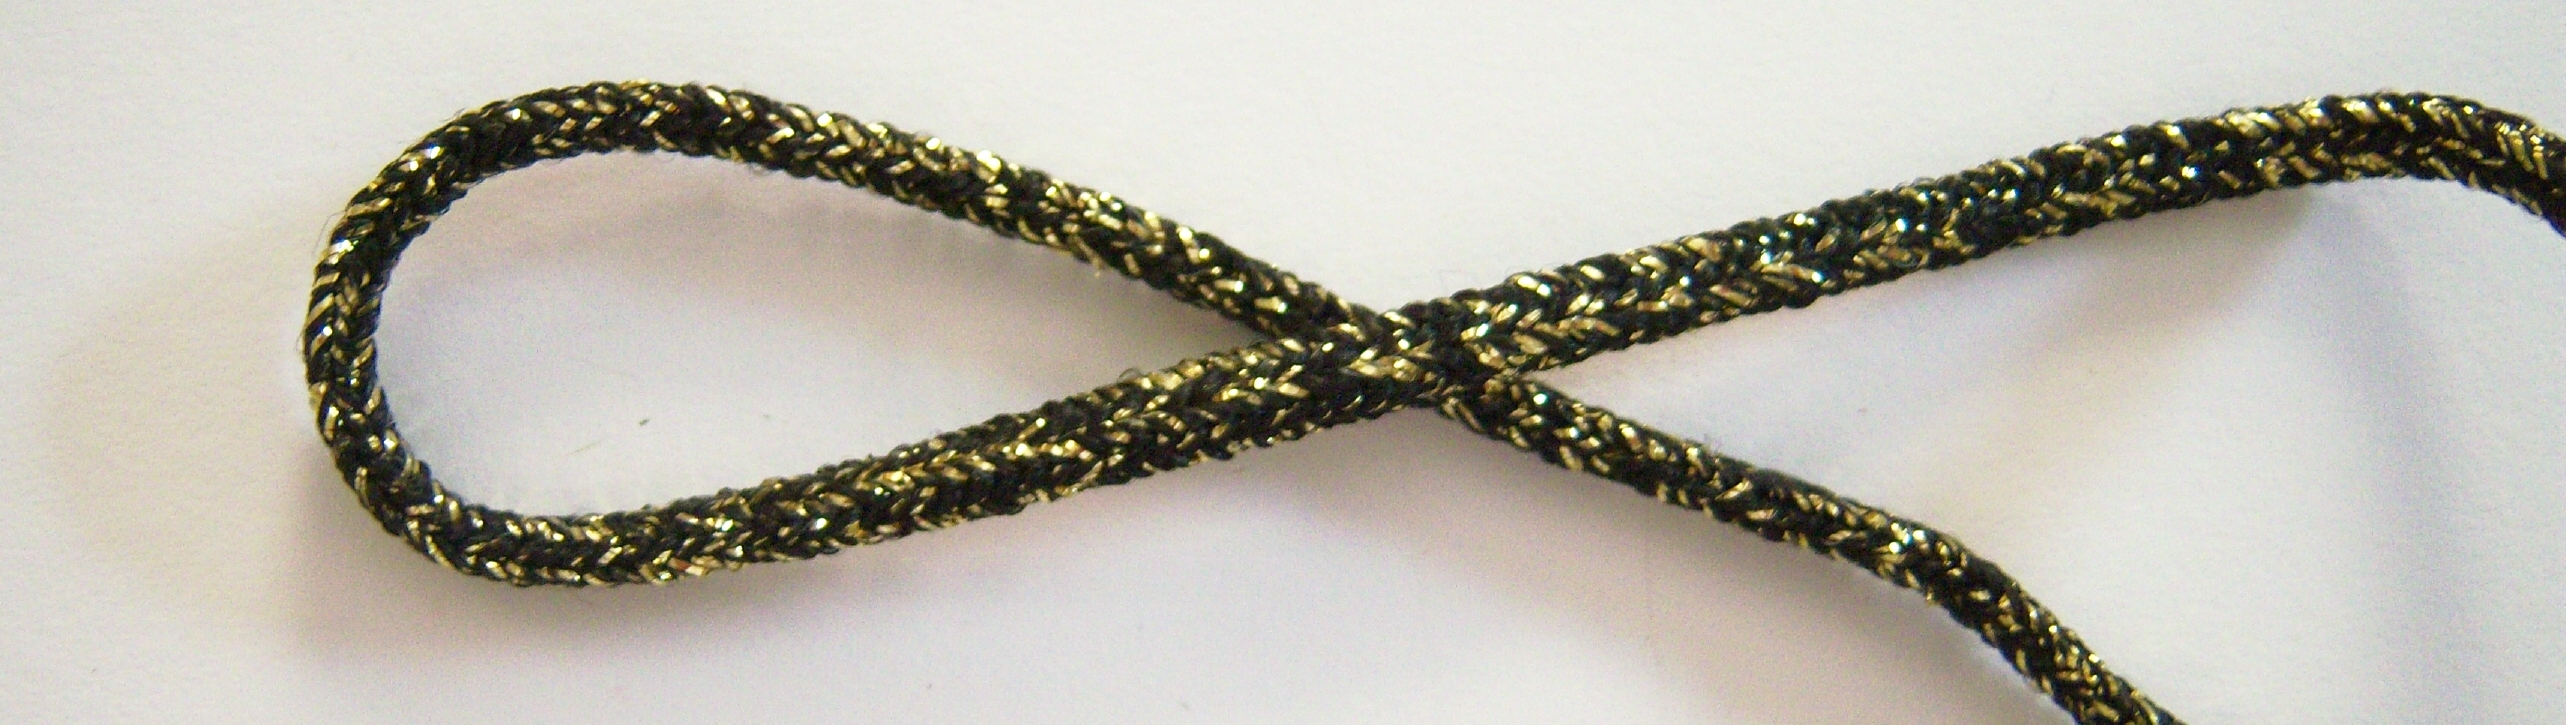 Black/Gold Round Cord Elastic